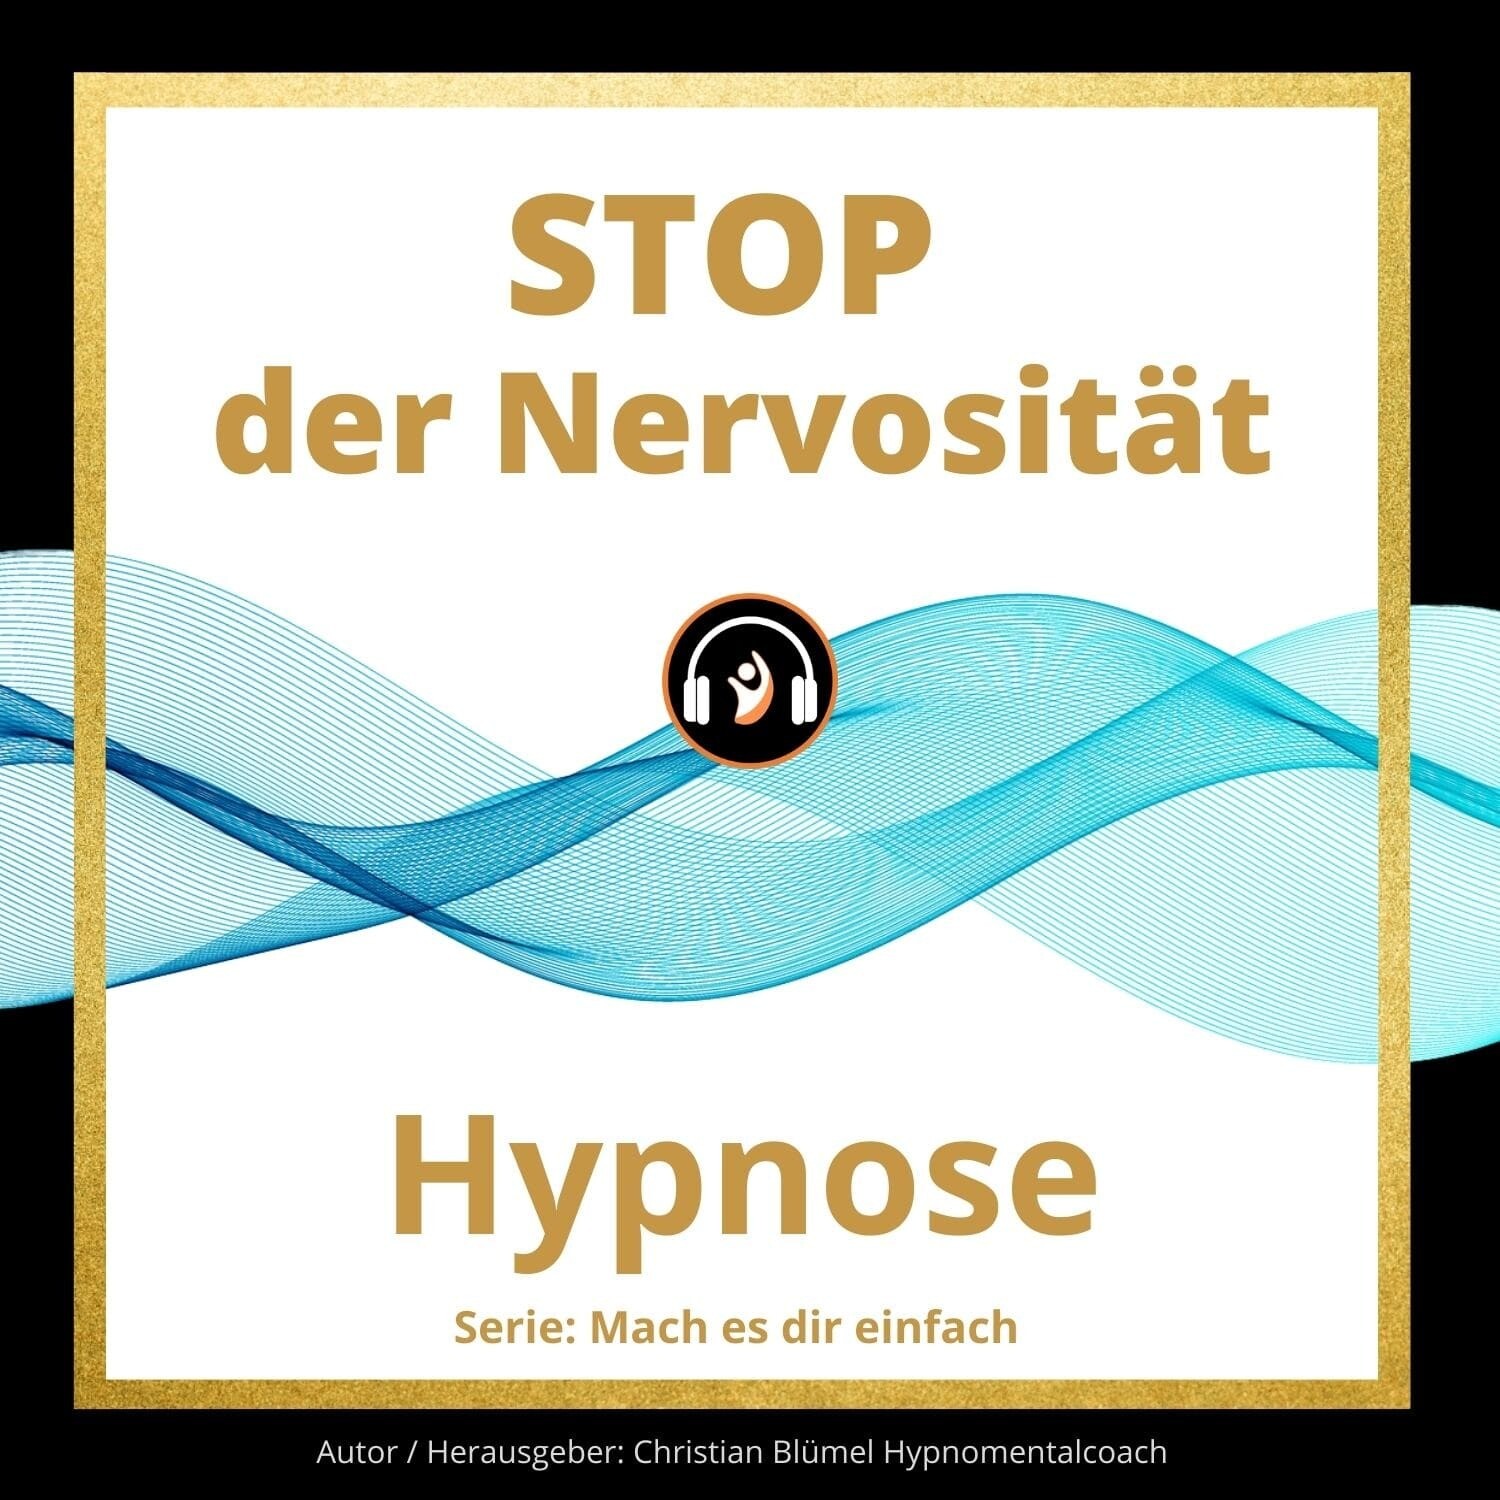 Audio Hypnose: STOP der Nervosität